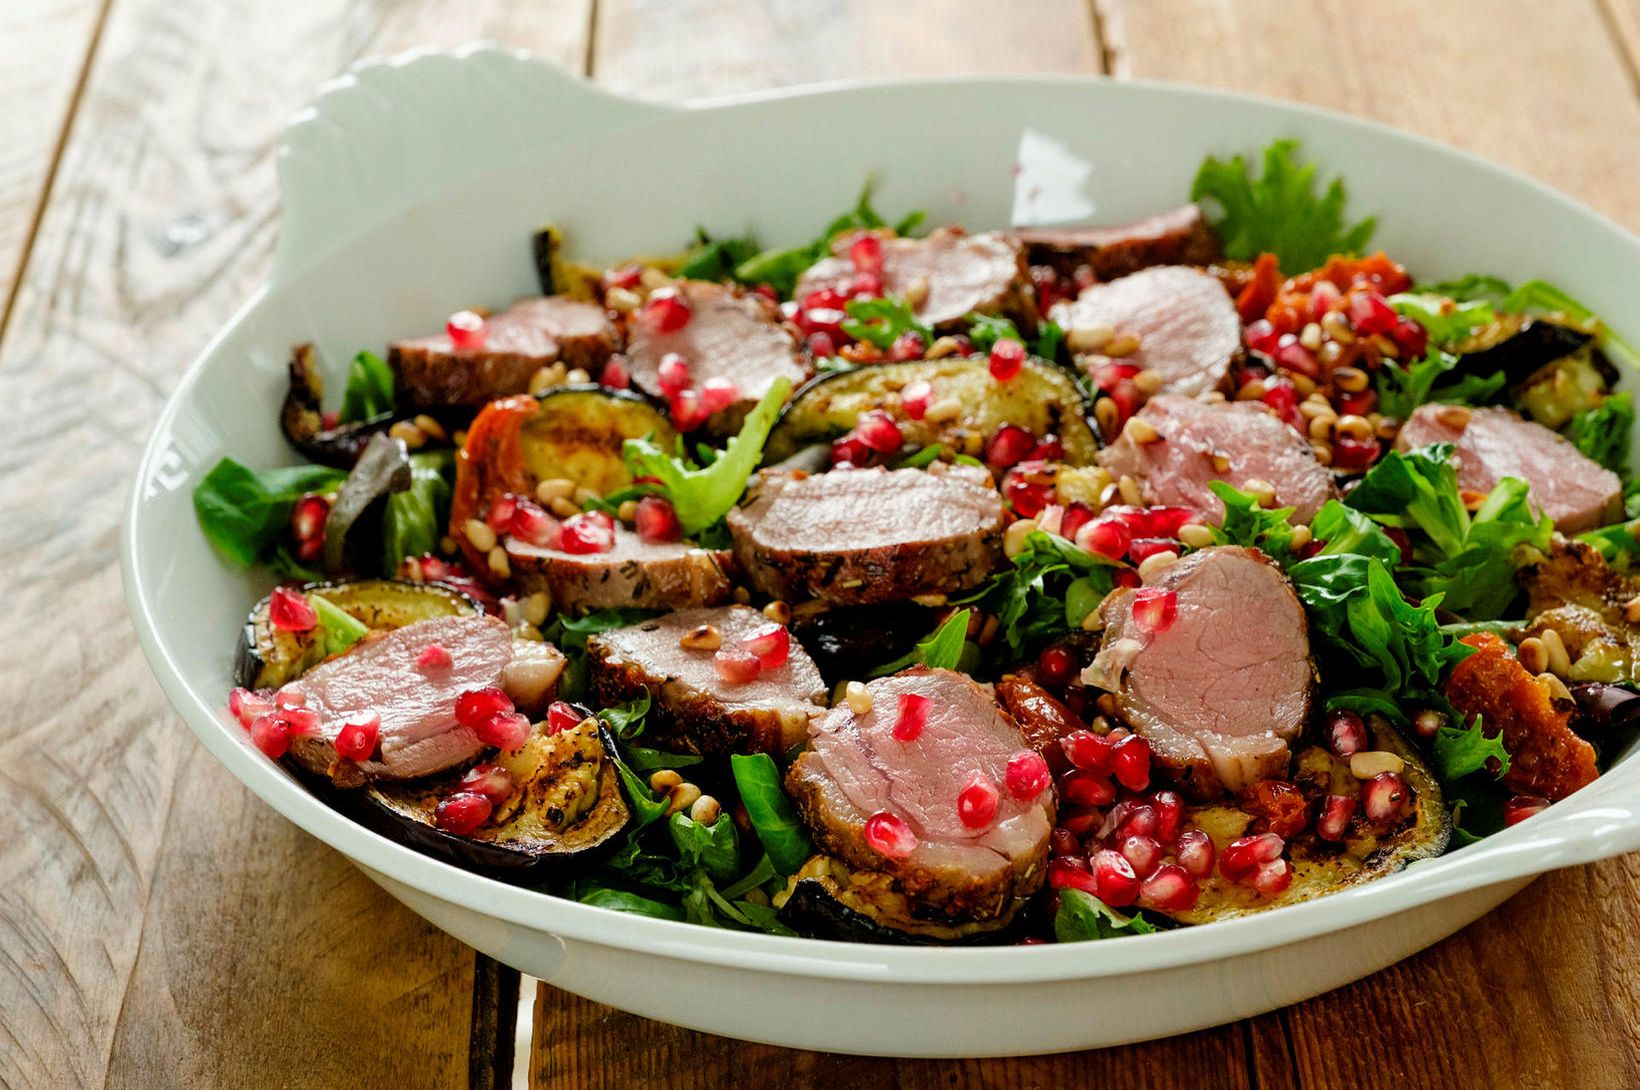 Salat vikunnar er sumarlegt með lambafille og eggaldin

